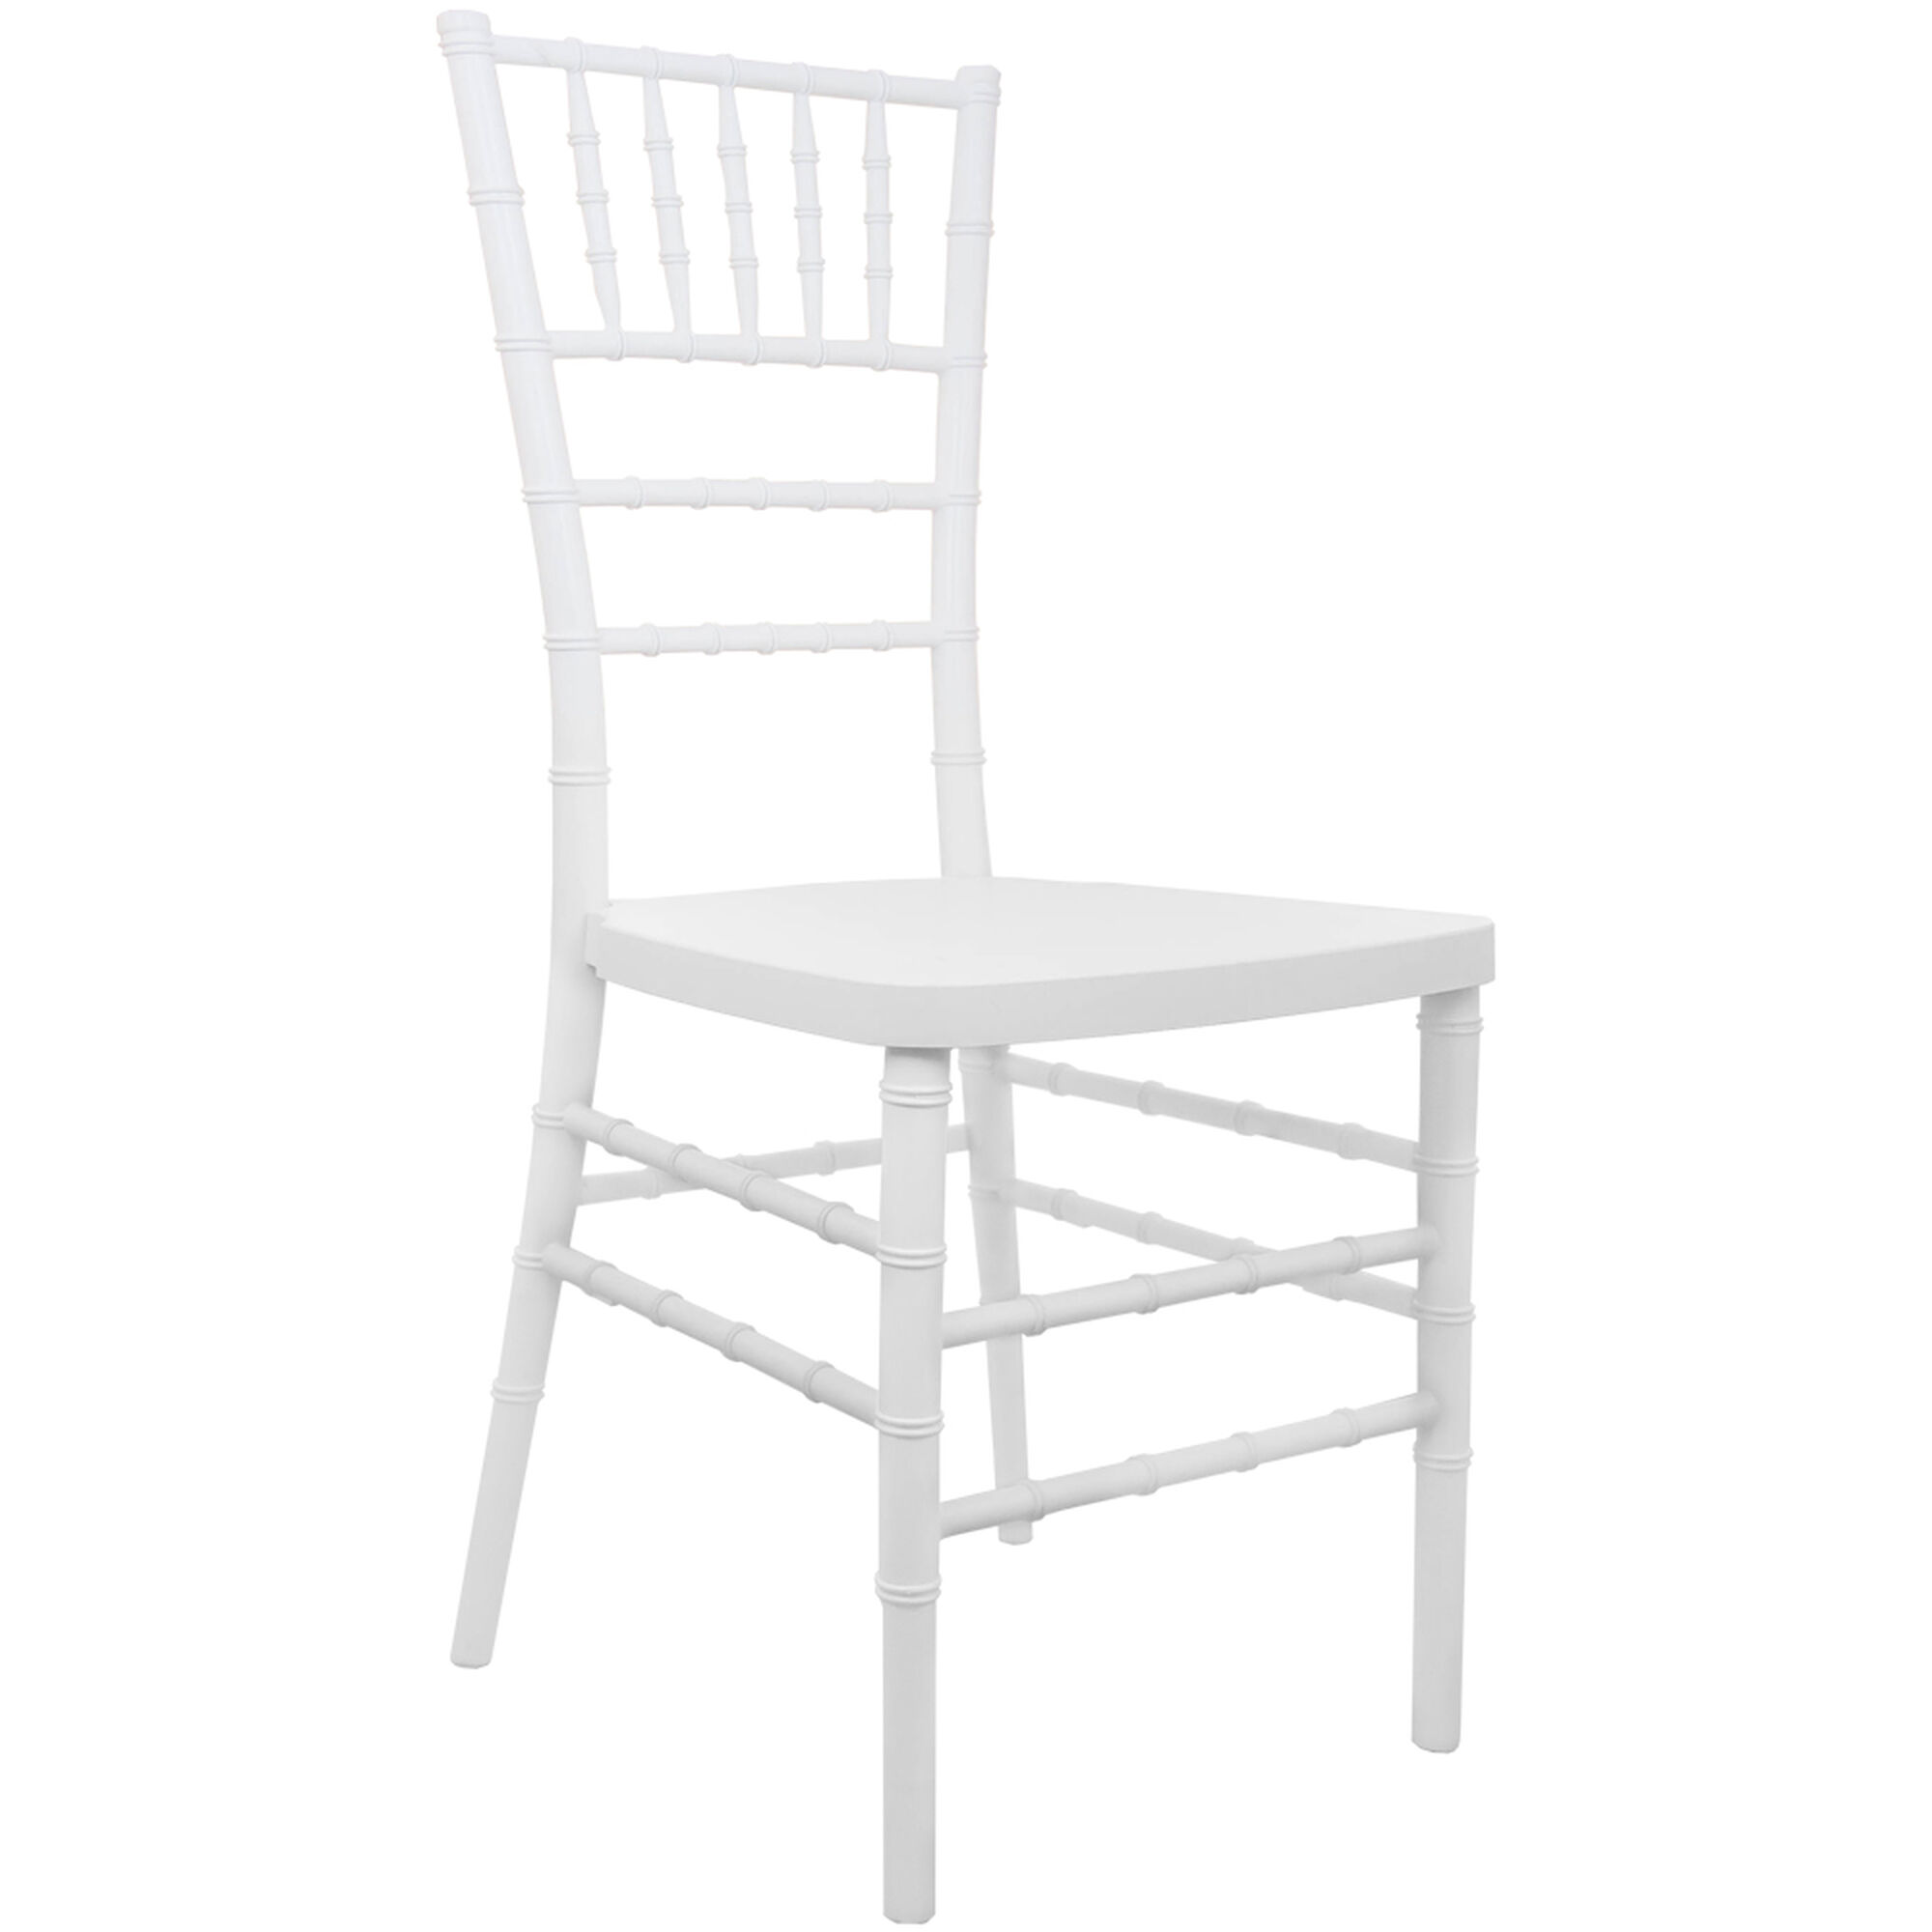 Tiffany white plastic chair